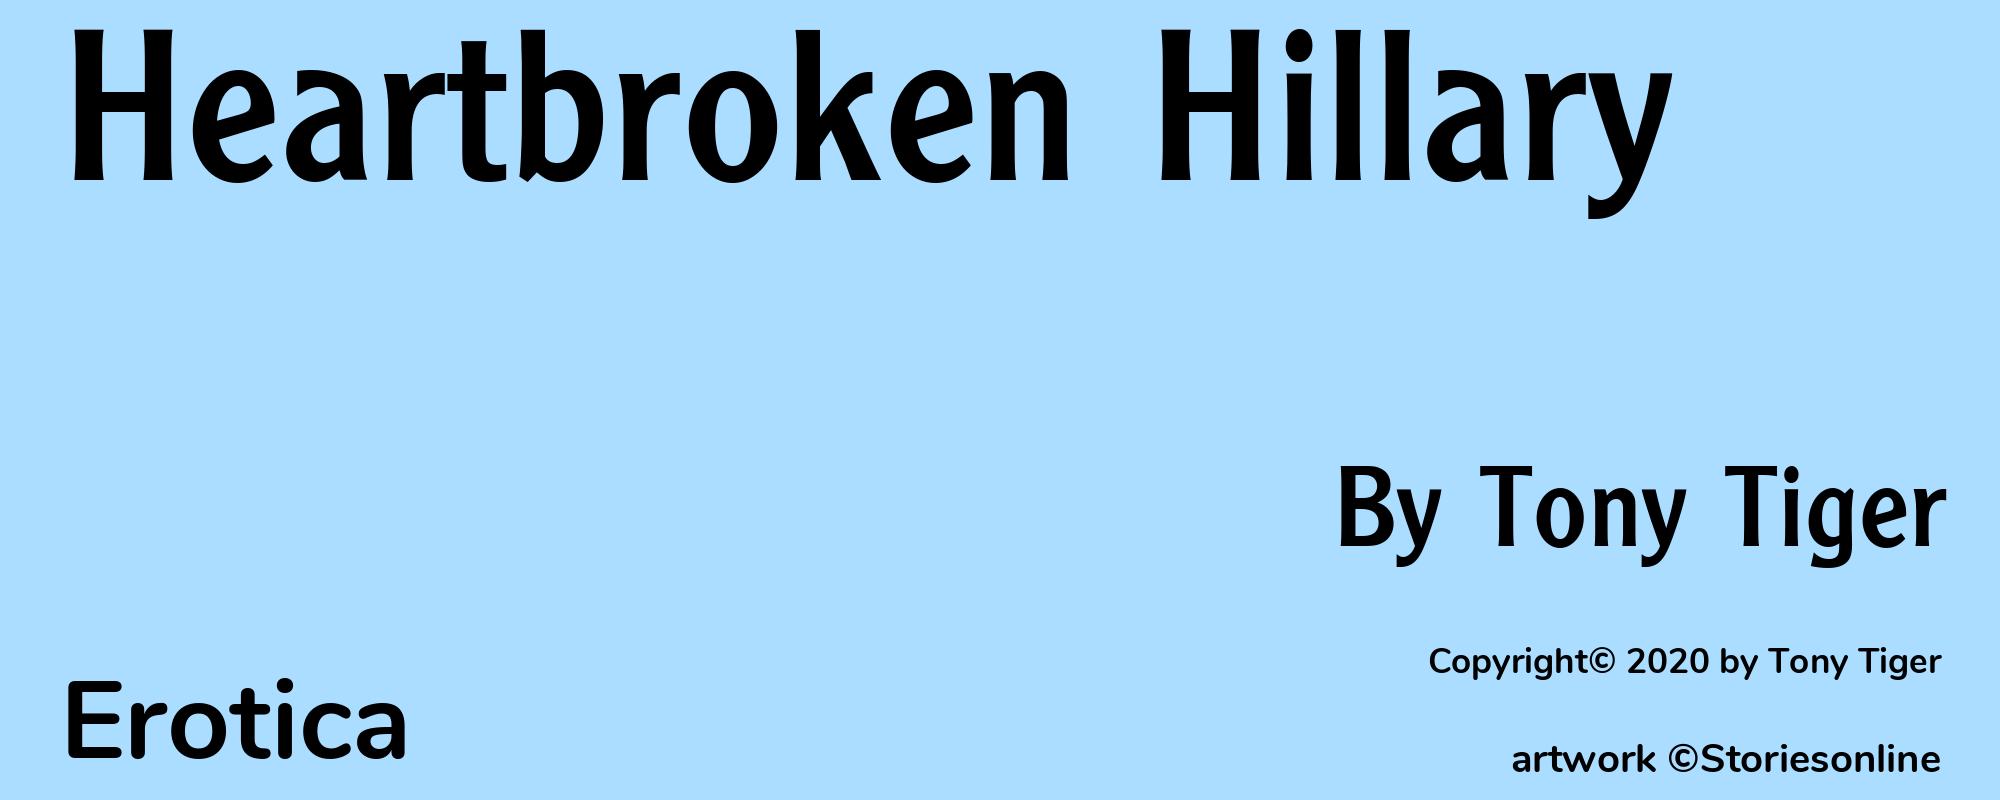 Heartbroken Hillary - Cover